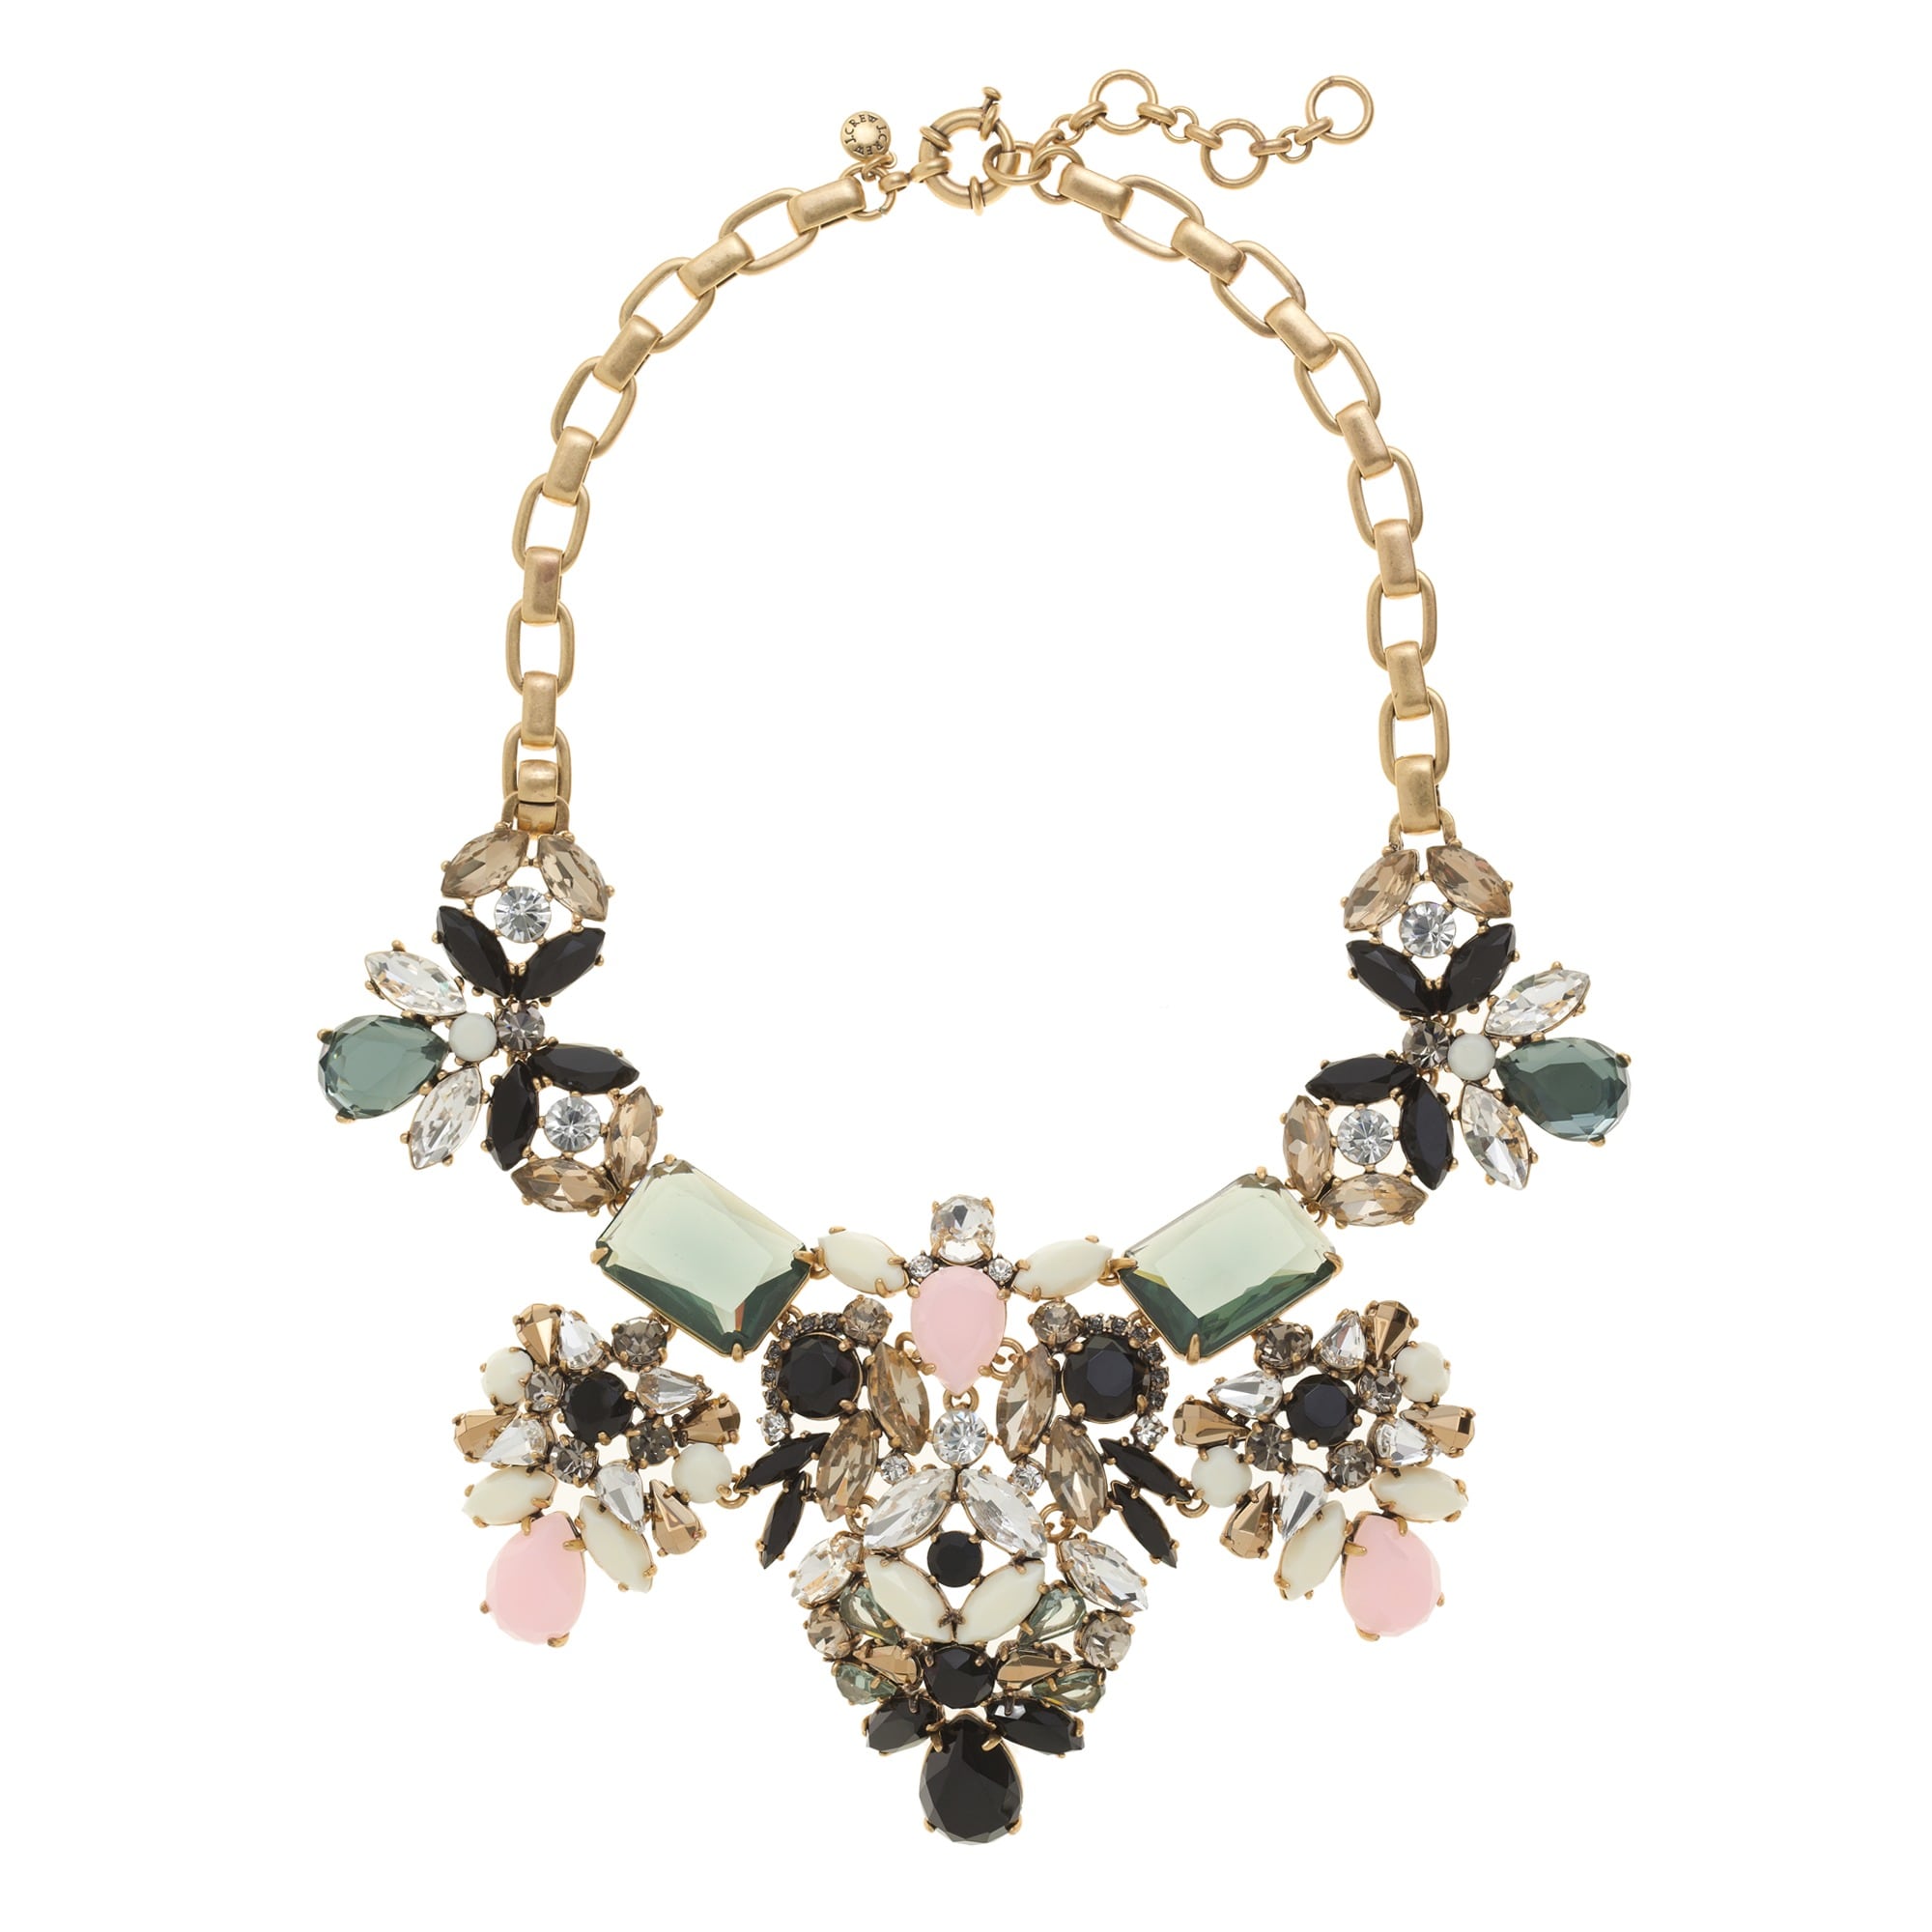 Floral pastel statement necklace : Women necklaces | J.Crew